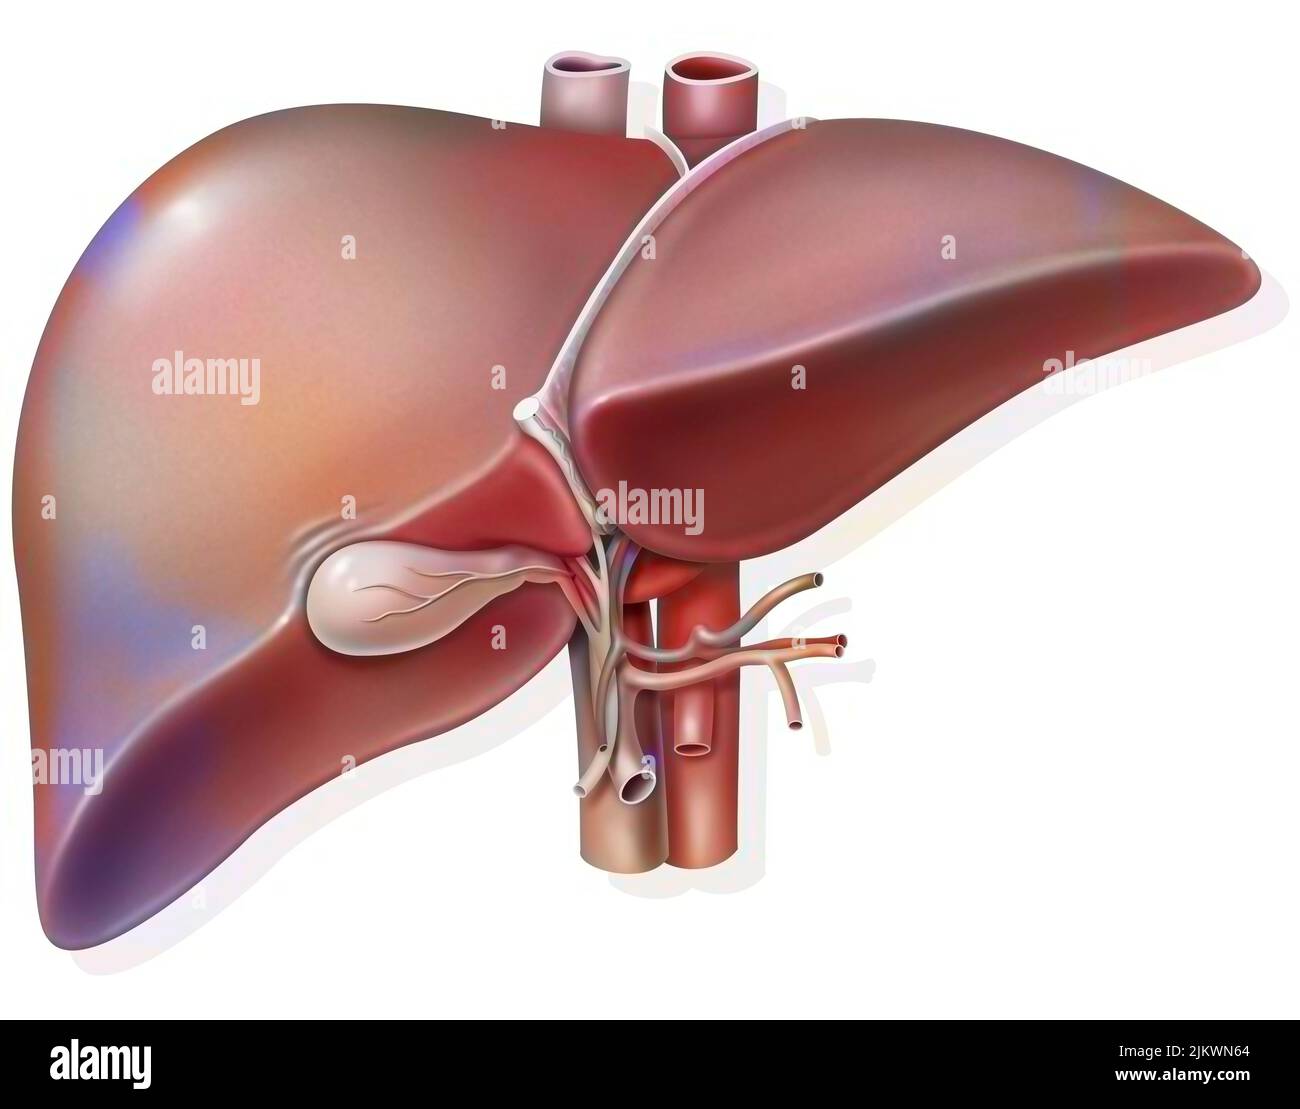 Hígado y vesícula biliar con evidencia de hilio hepático. Foto de stock